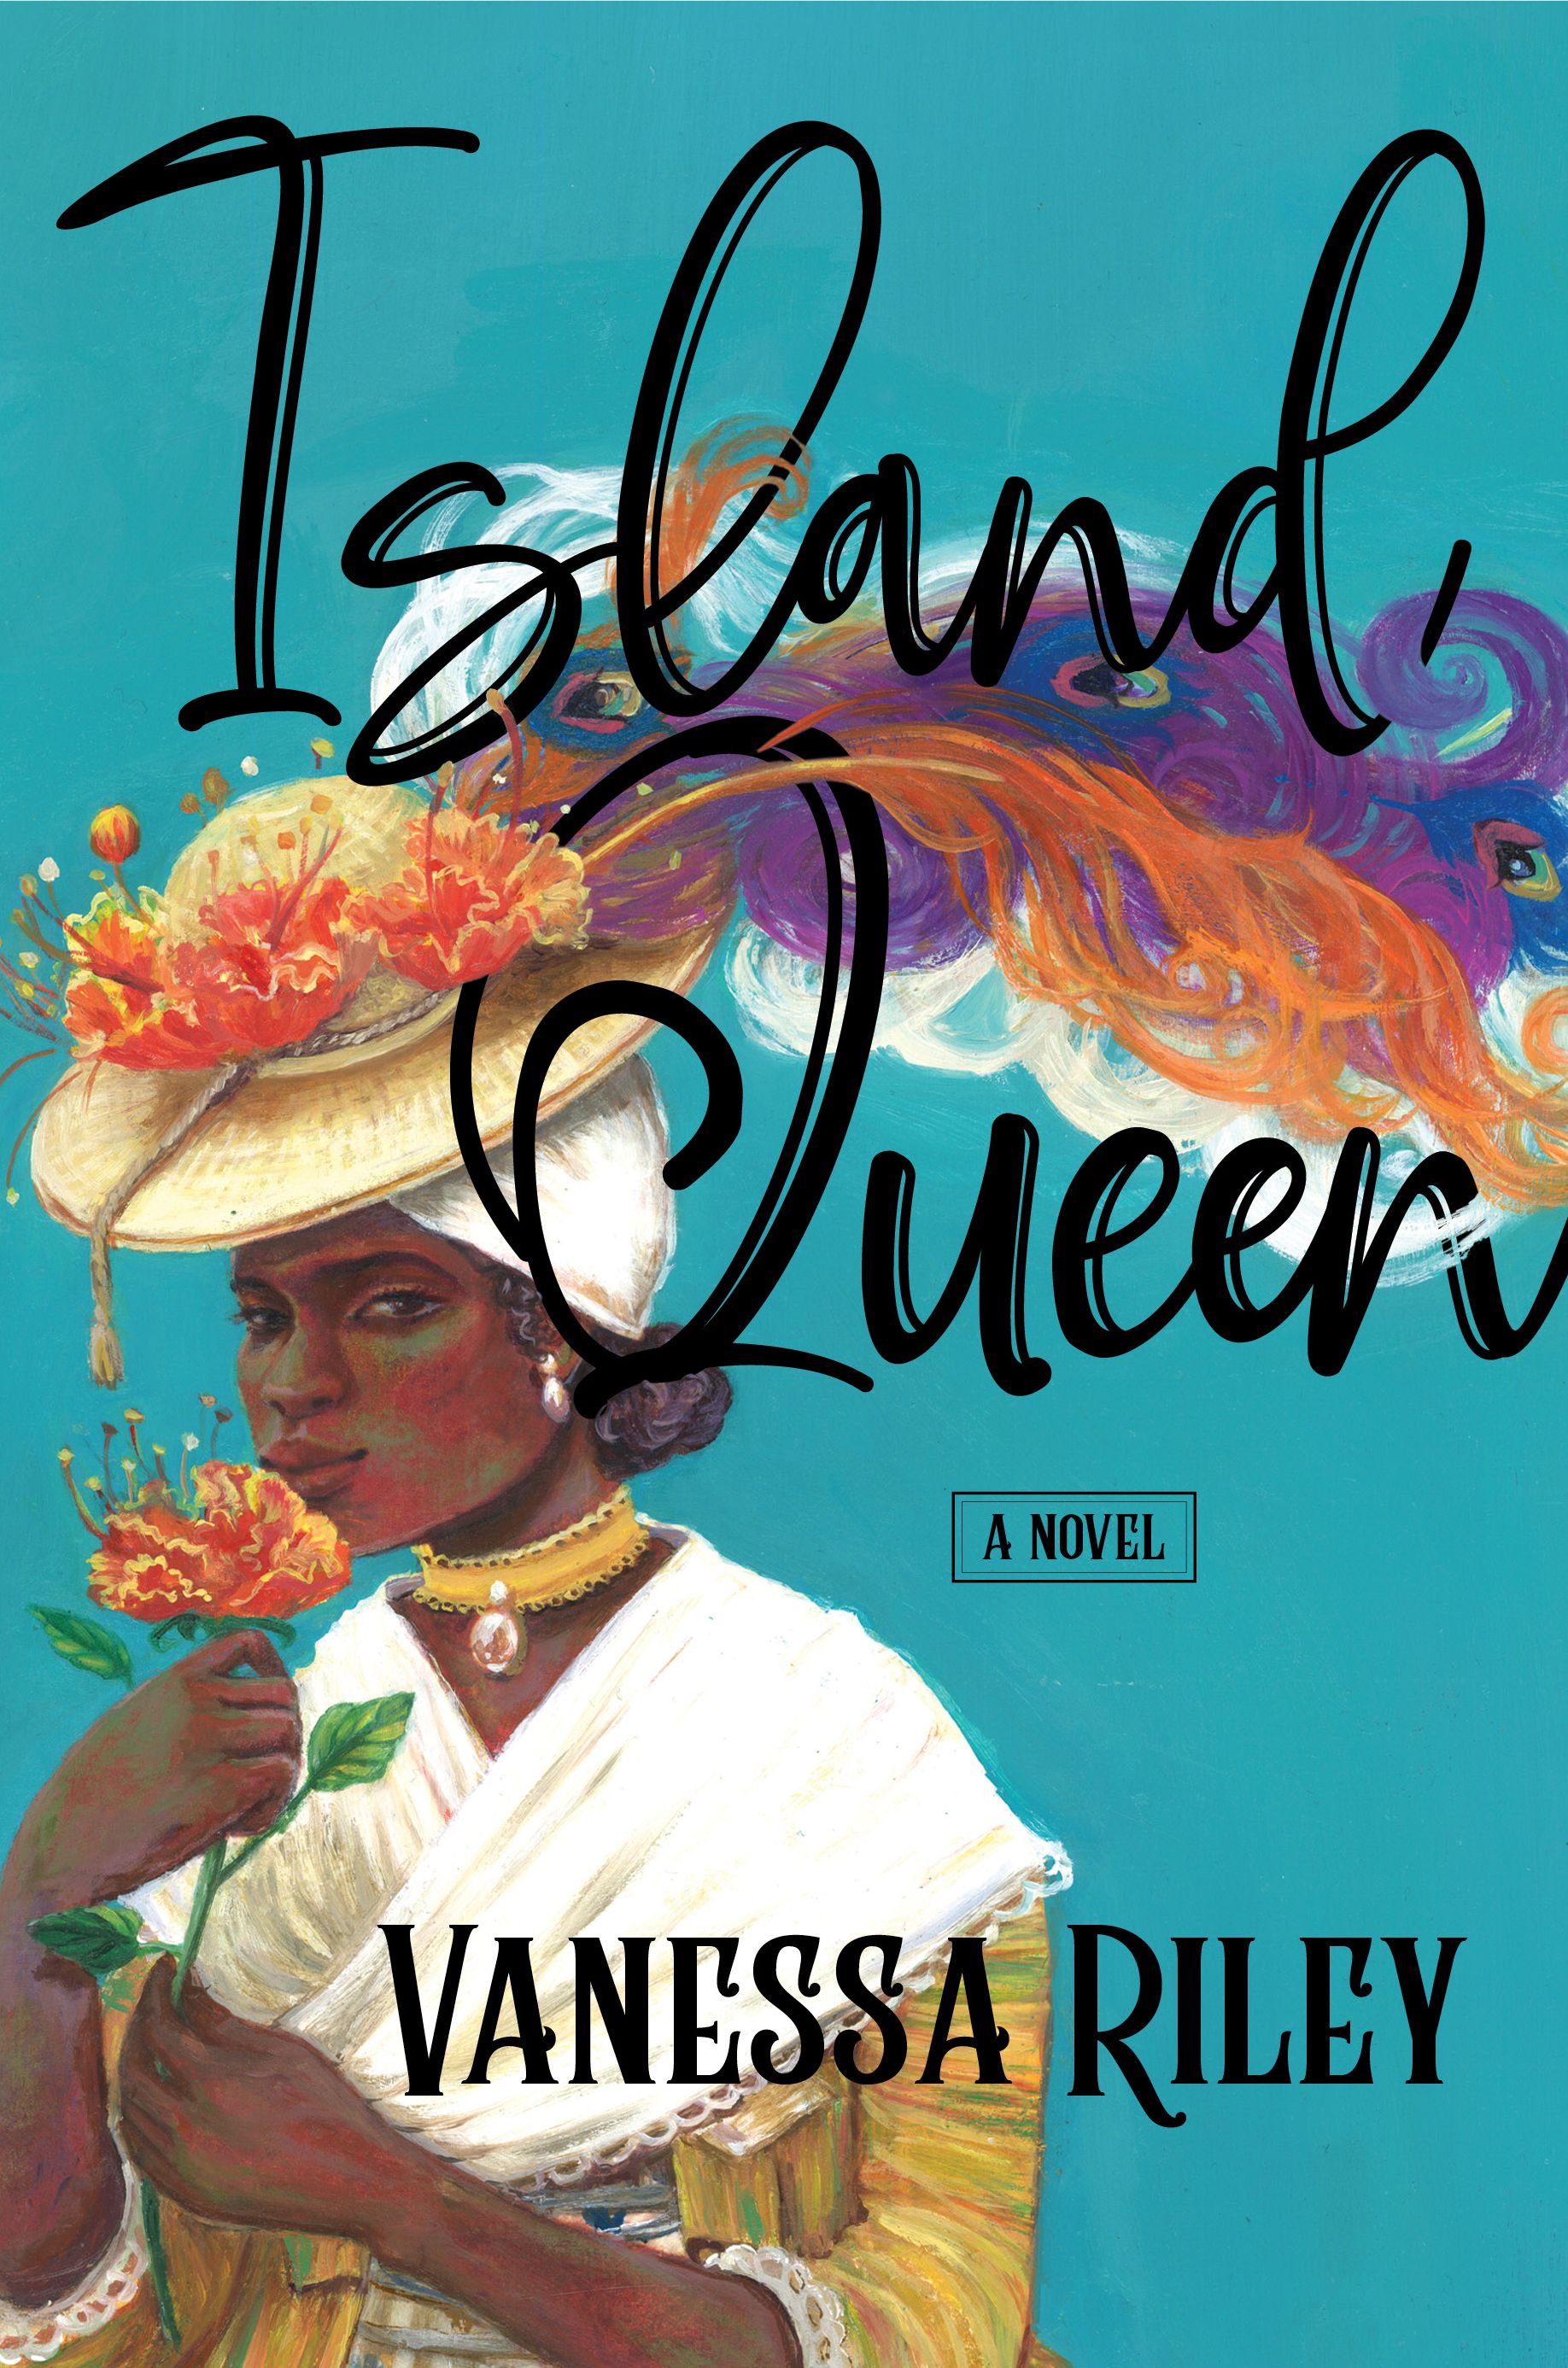 Island Queen, by Vanessa Riley